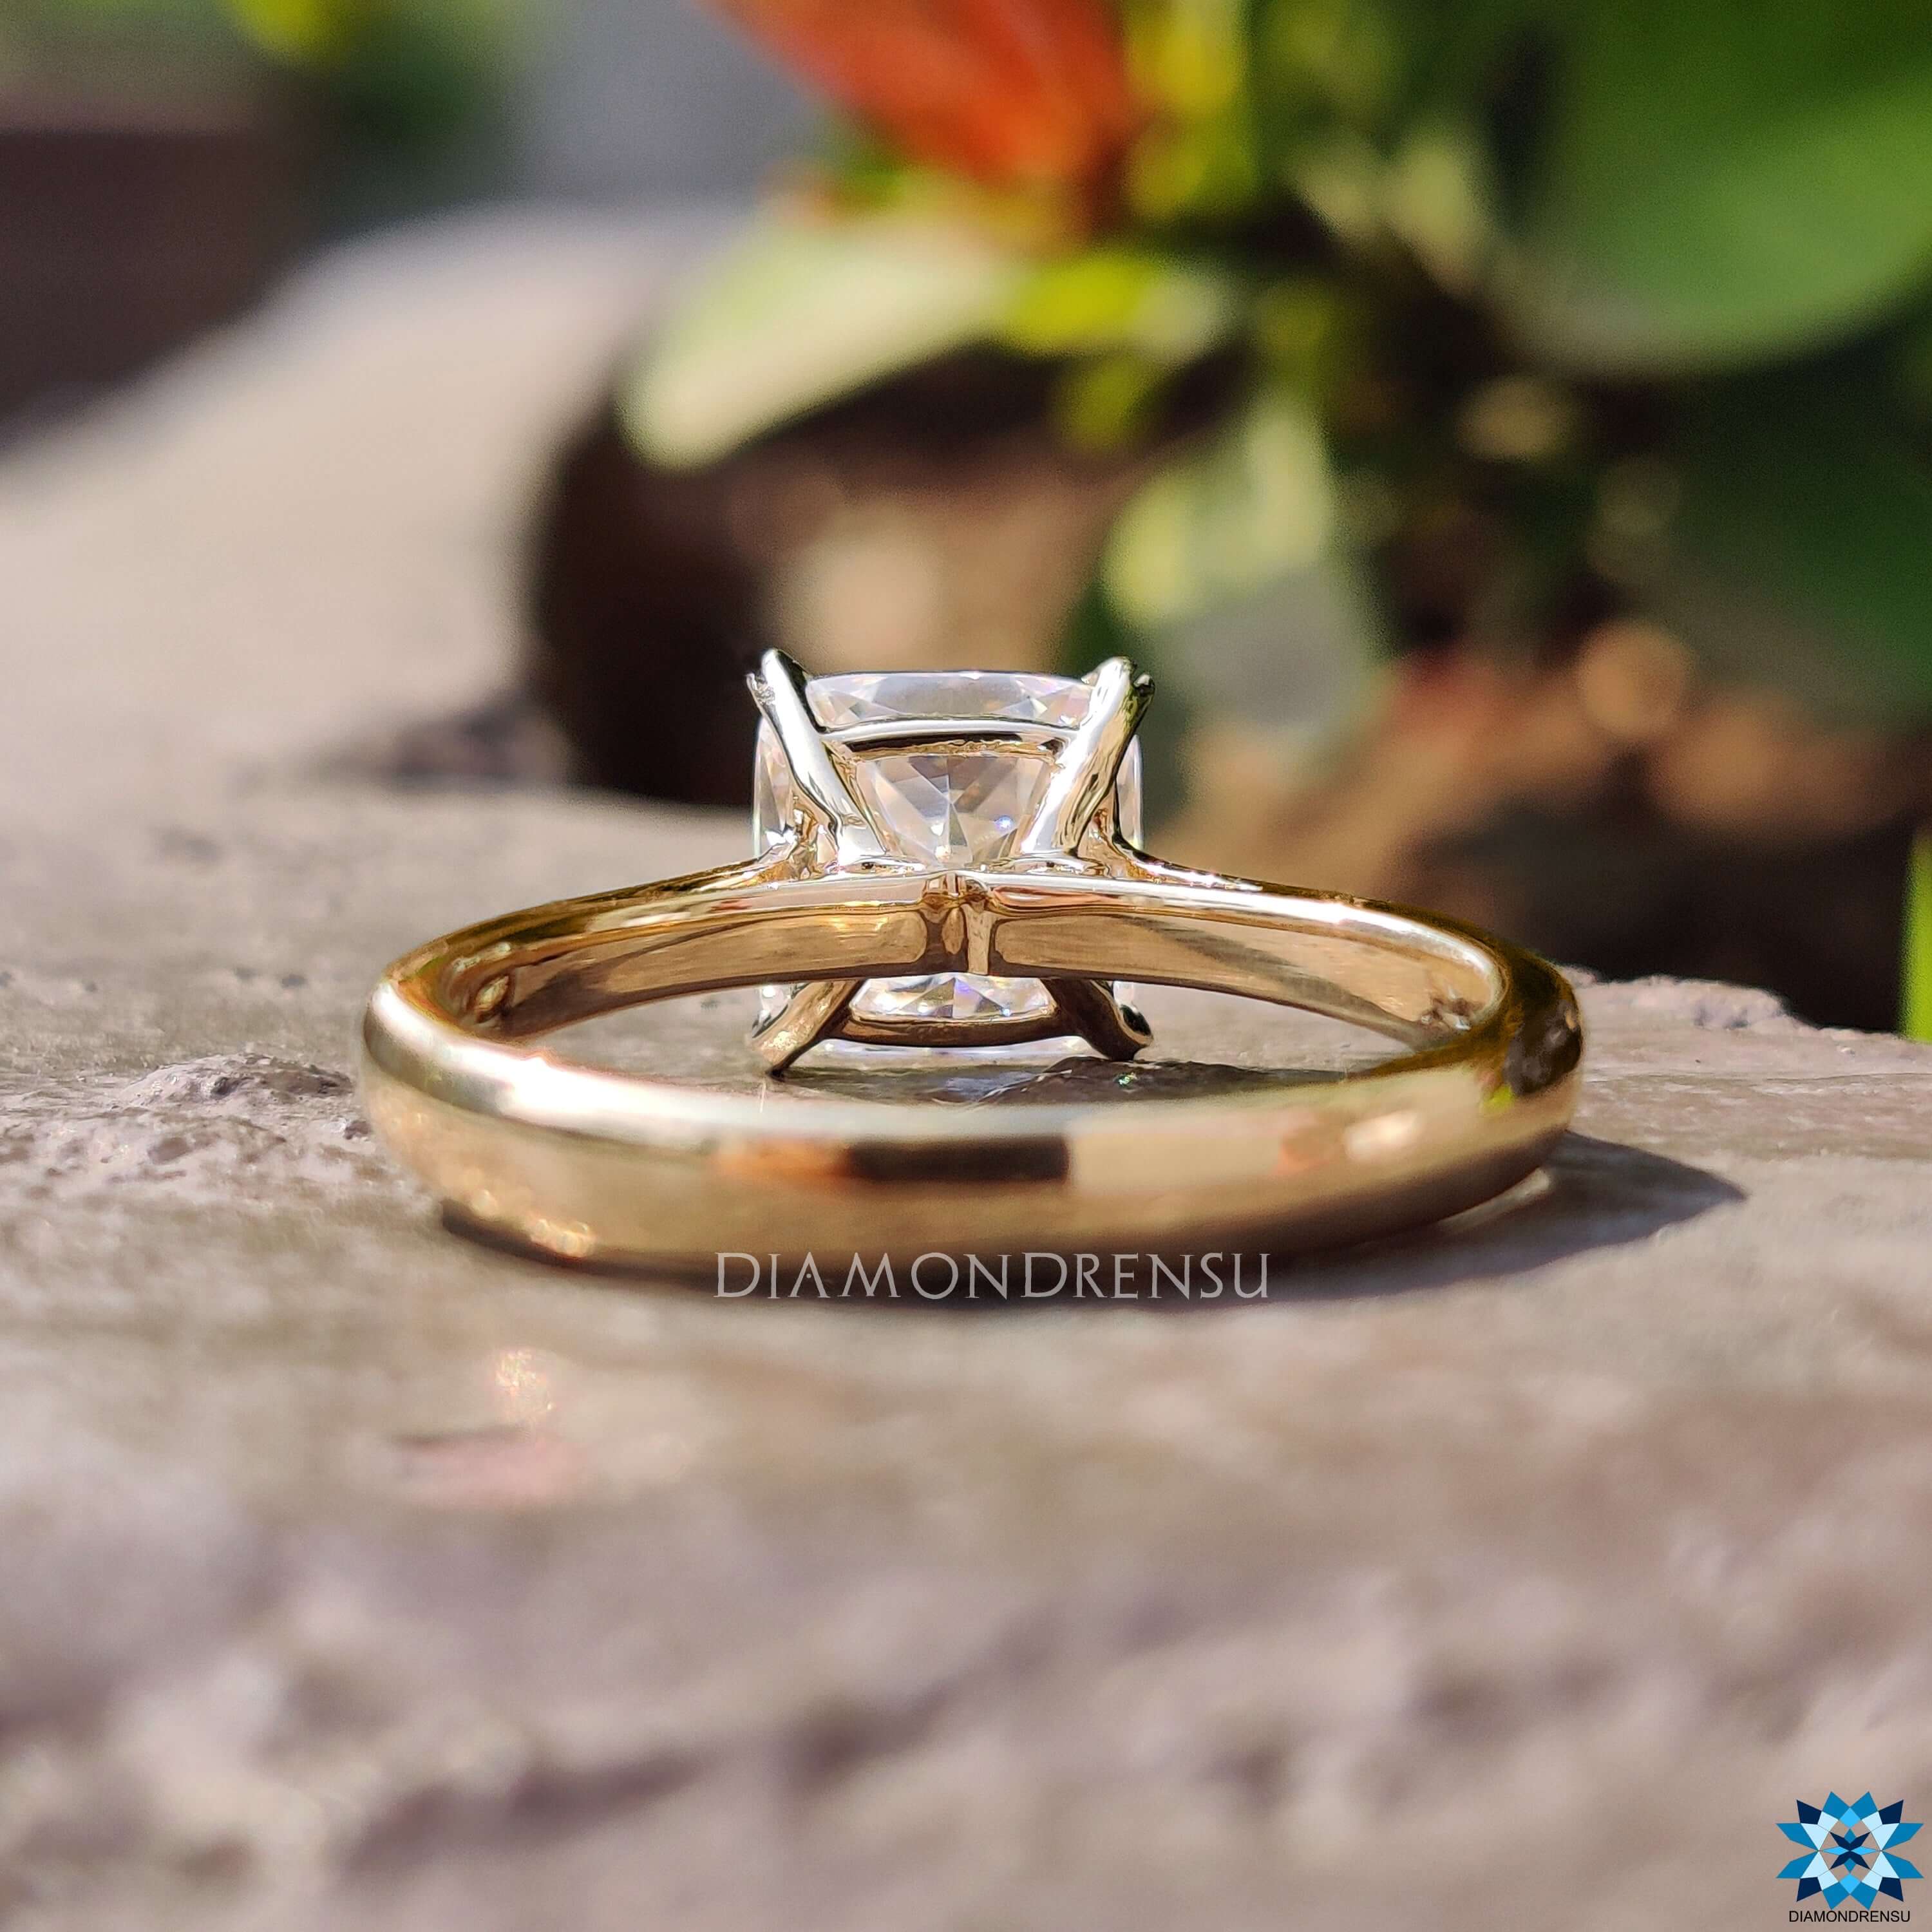 rensu cut engagement ring - diamondrensu